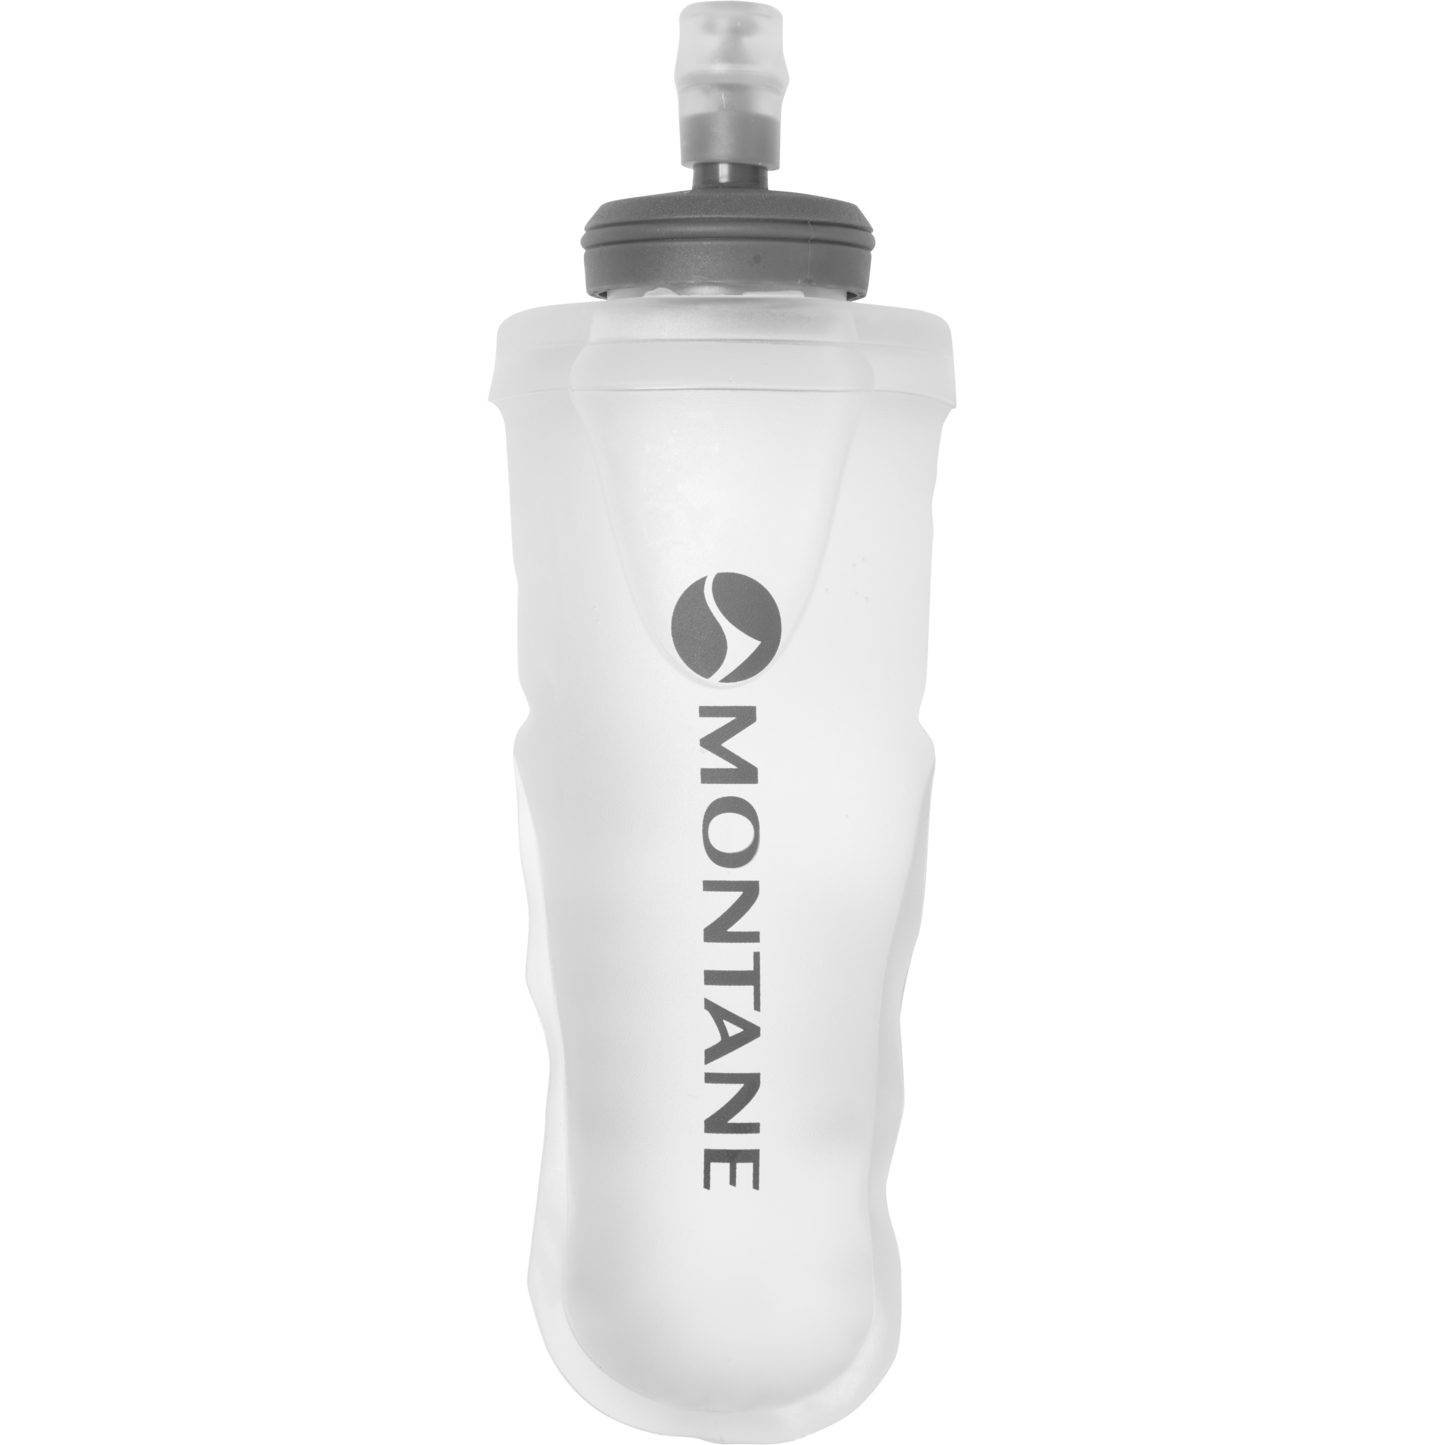 Produktbild von Montane Wasser Softflask 360ml - montane logo